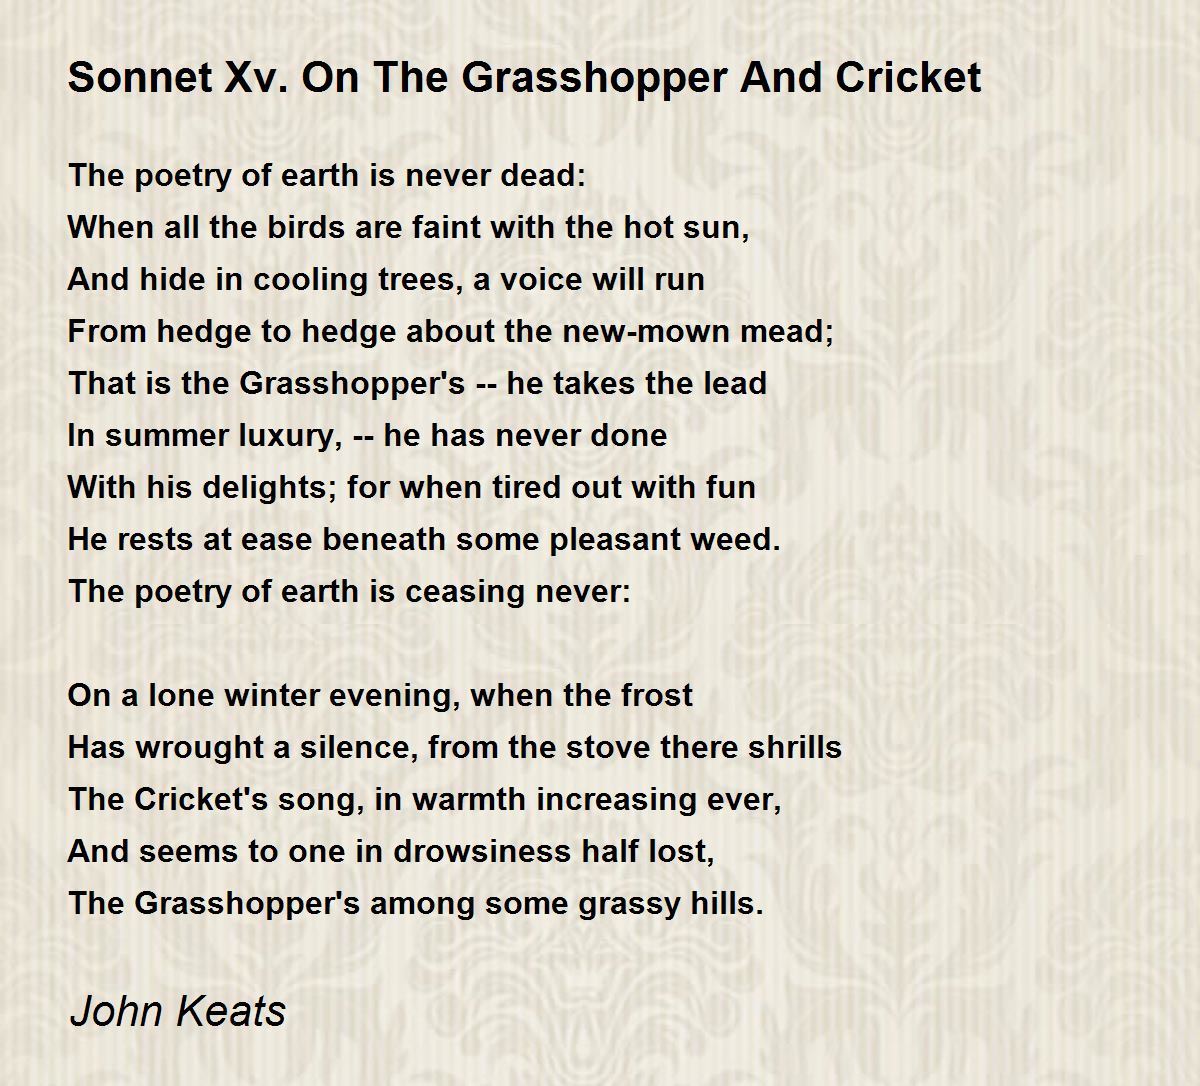 keats on the sonnet